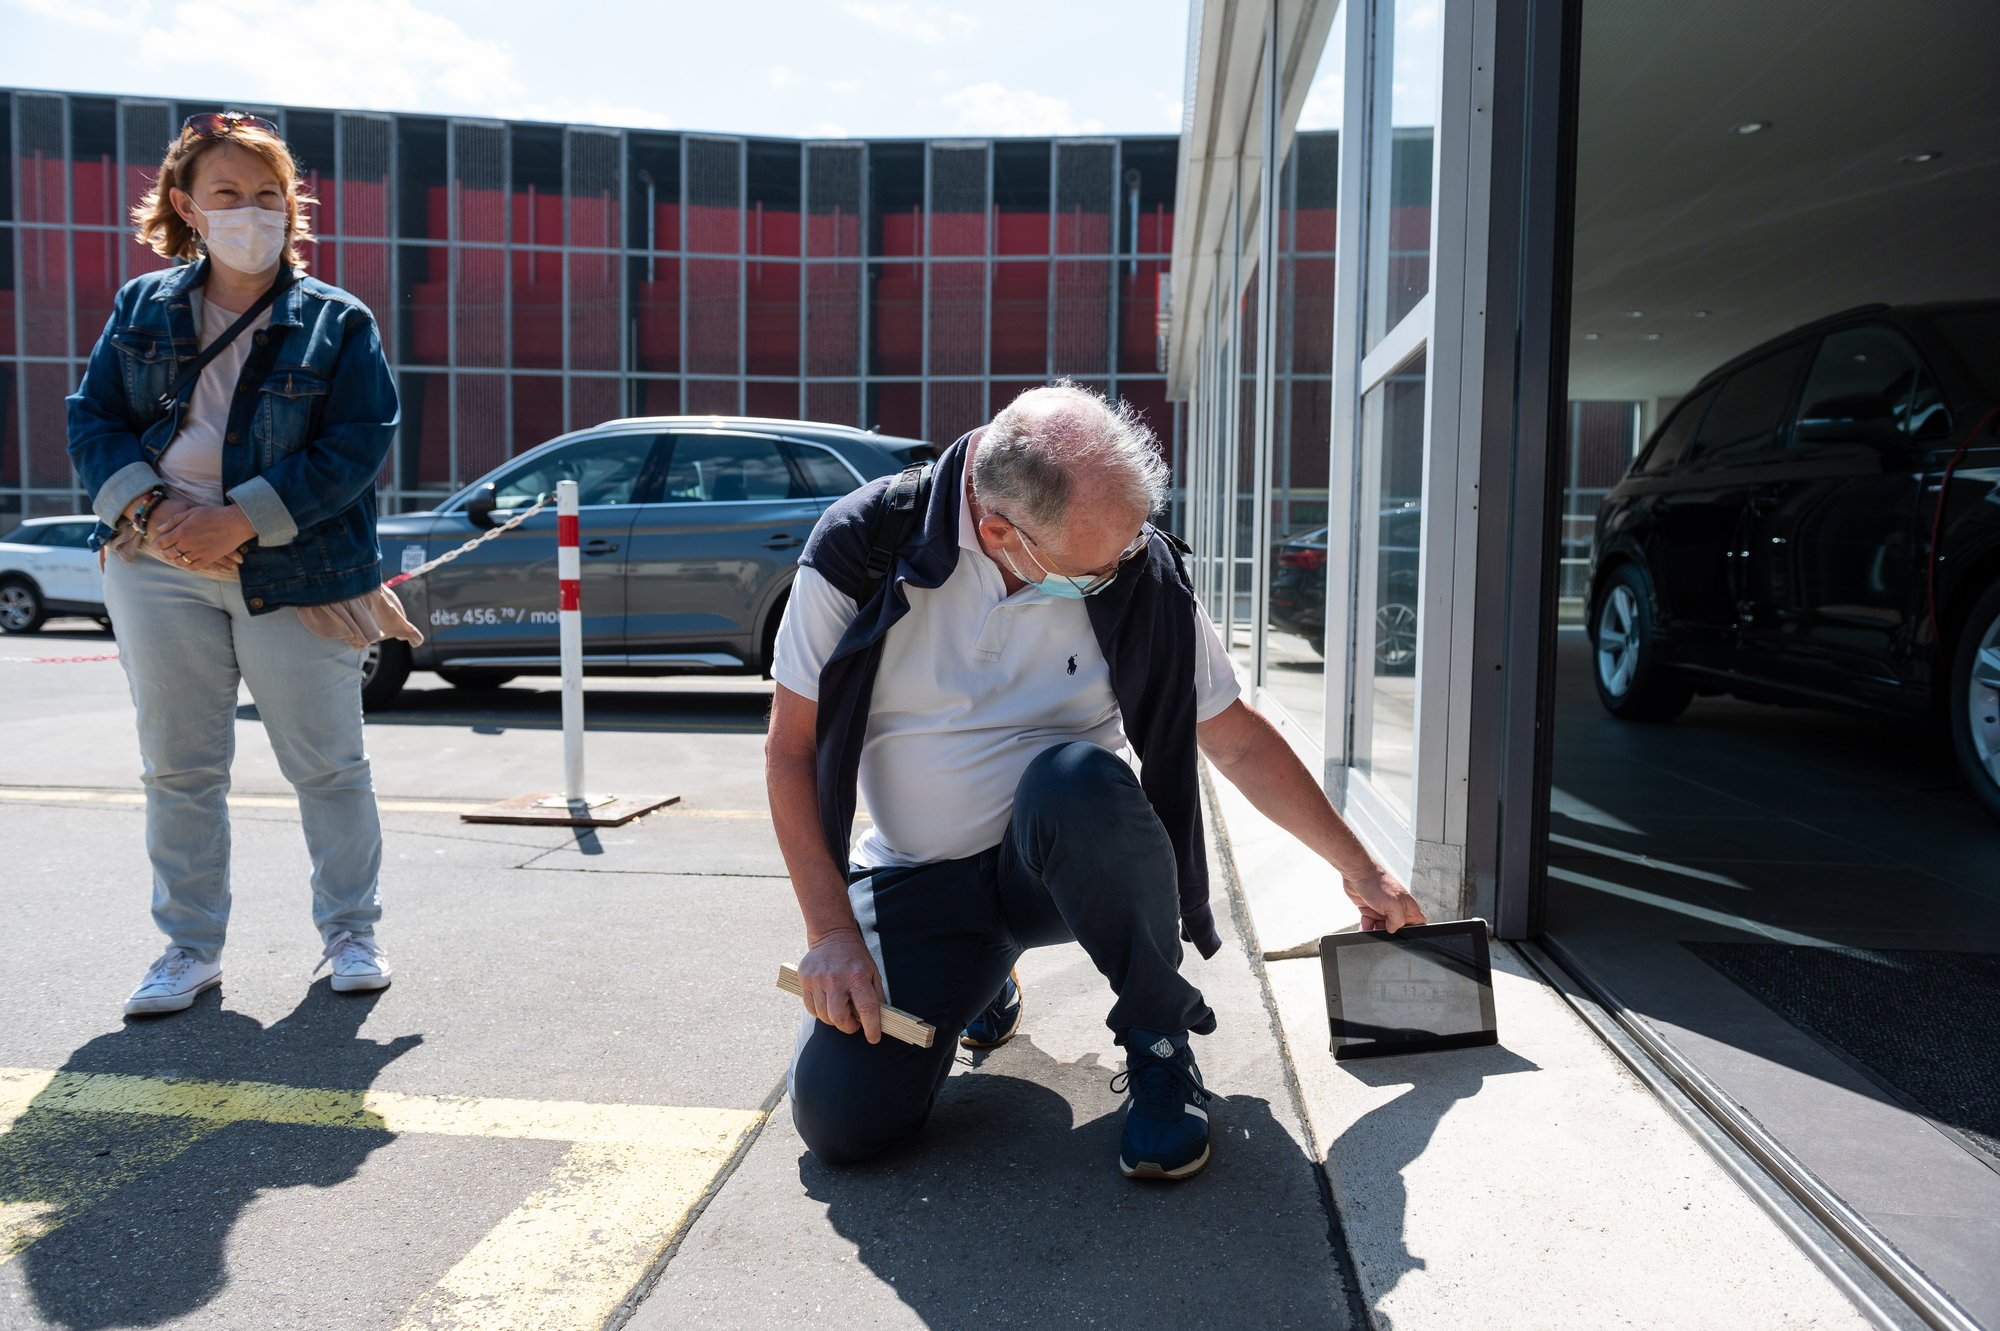 Une équipe de Pro Infirmis collecte des données sur l'accessibilité des bâtiments. Ici, à l'entrée du garage Senn, à Neuchâtel, on mesure la pente.

Neuchatel, le 29 mai 2021
Photo: Lucas Vuitel